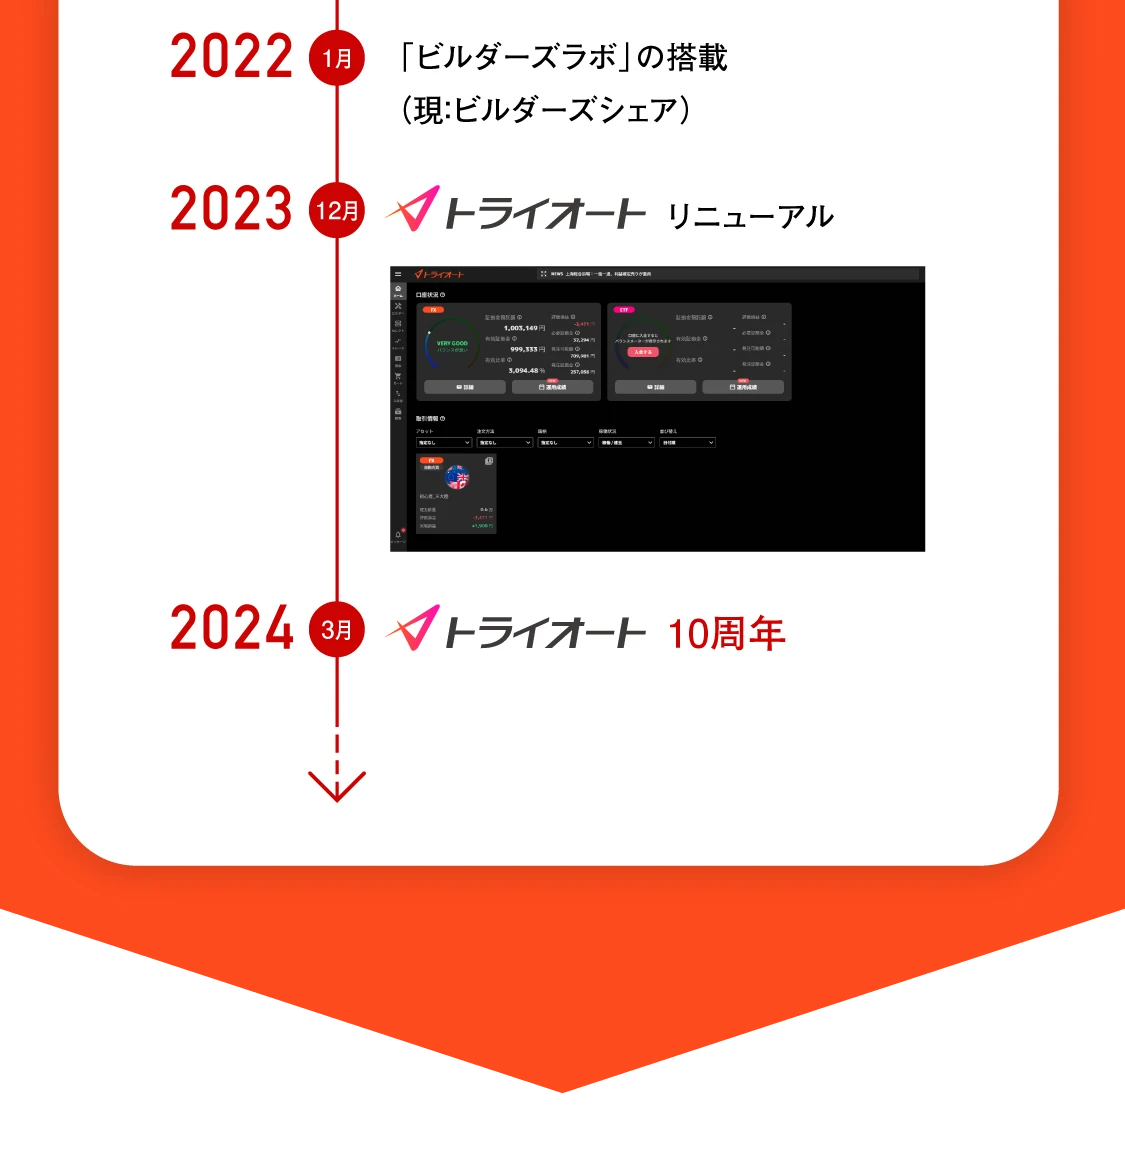 2022年1月 「ビルダーズラボ」の搭載（現：ビルダーズシェア）、2023年12月 トライオートリニューアル、2024年3月 トライオートCFDリリース（予定）